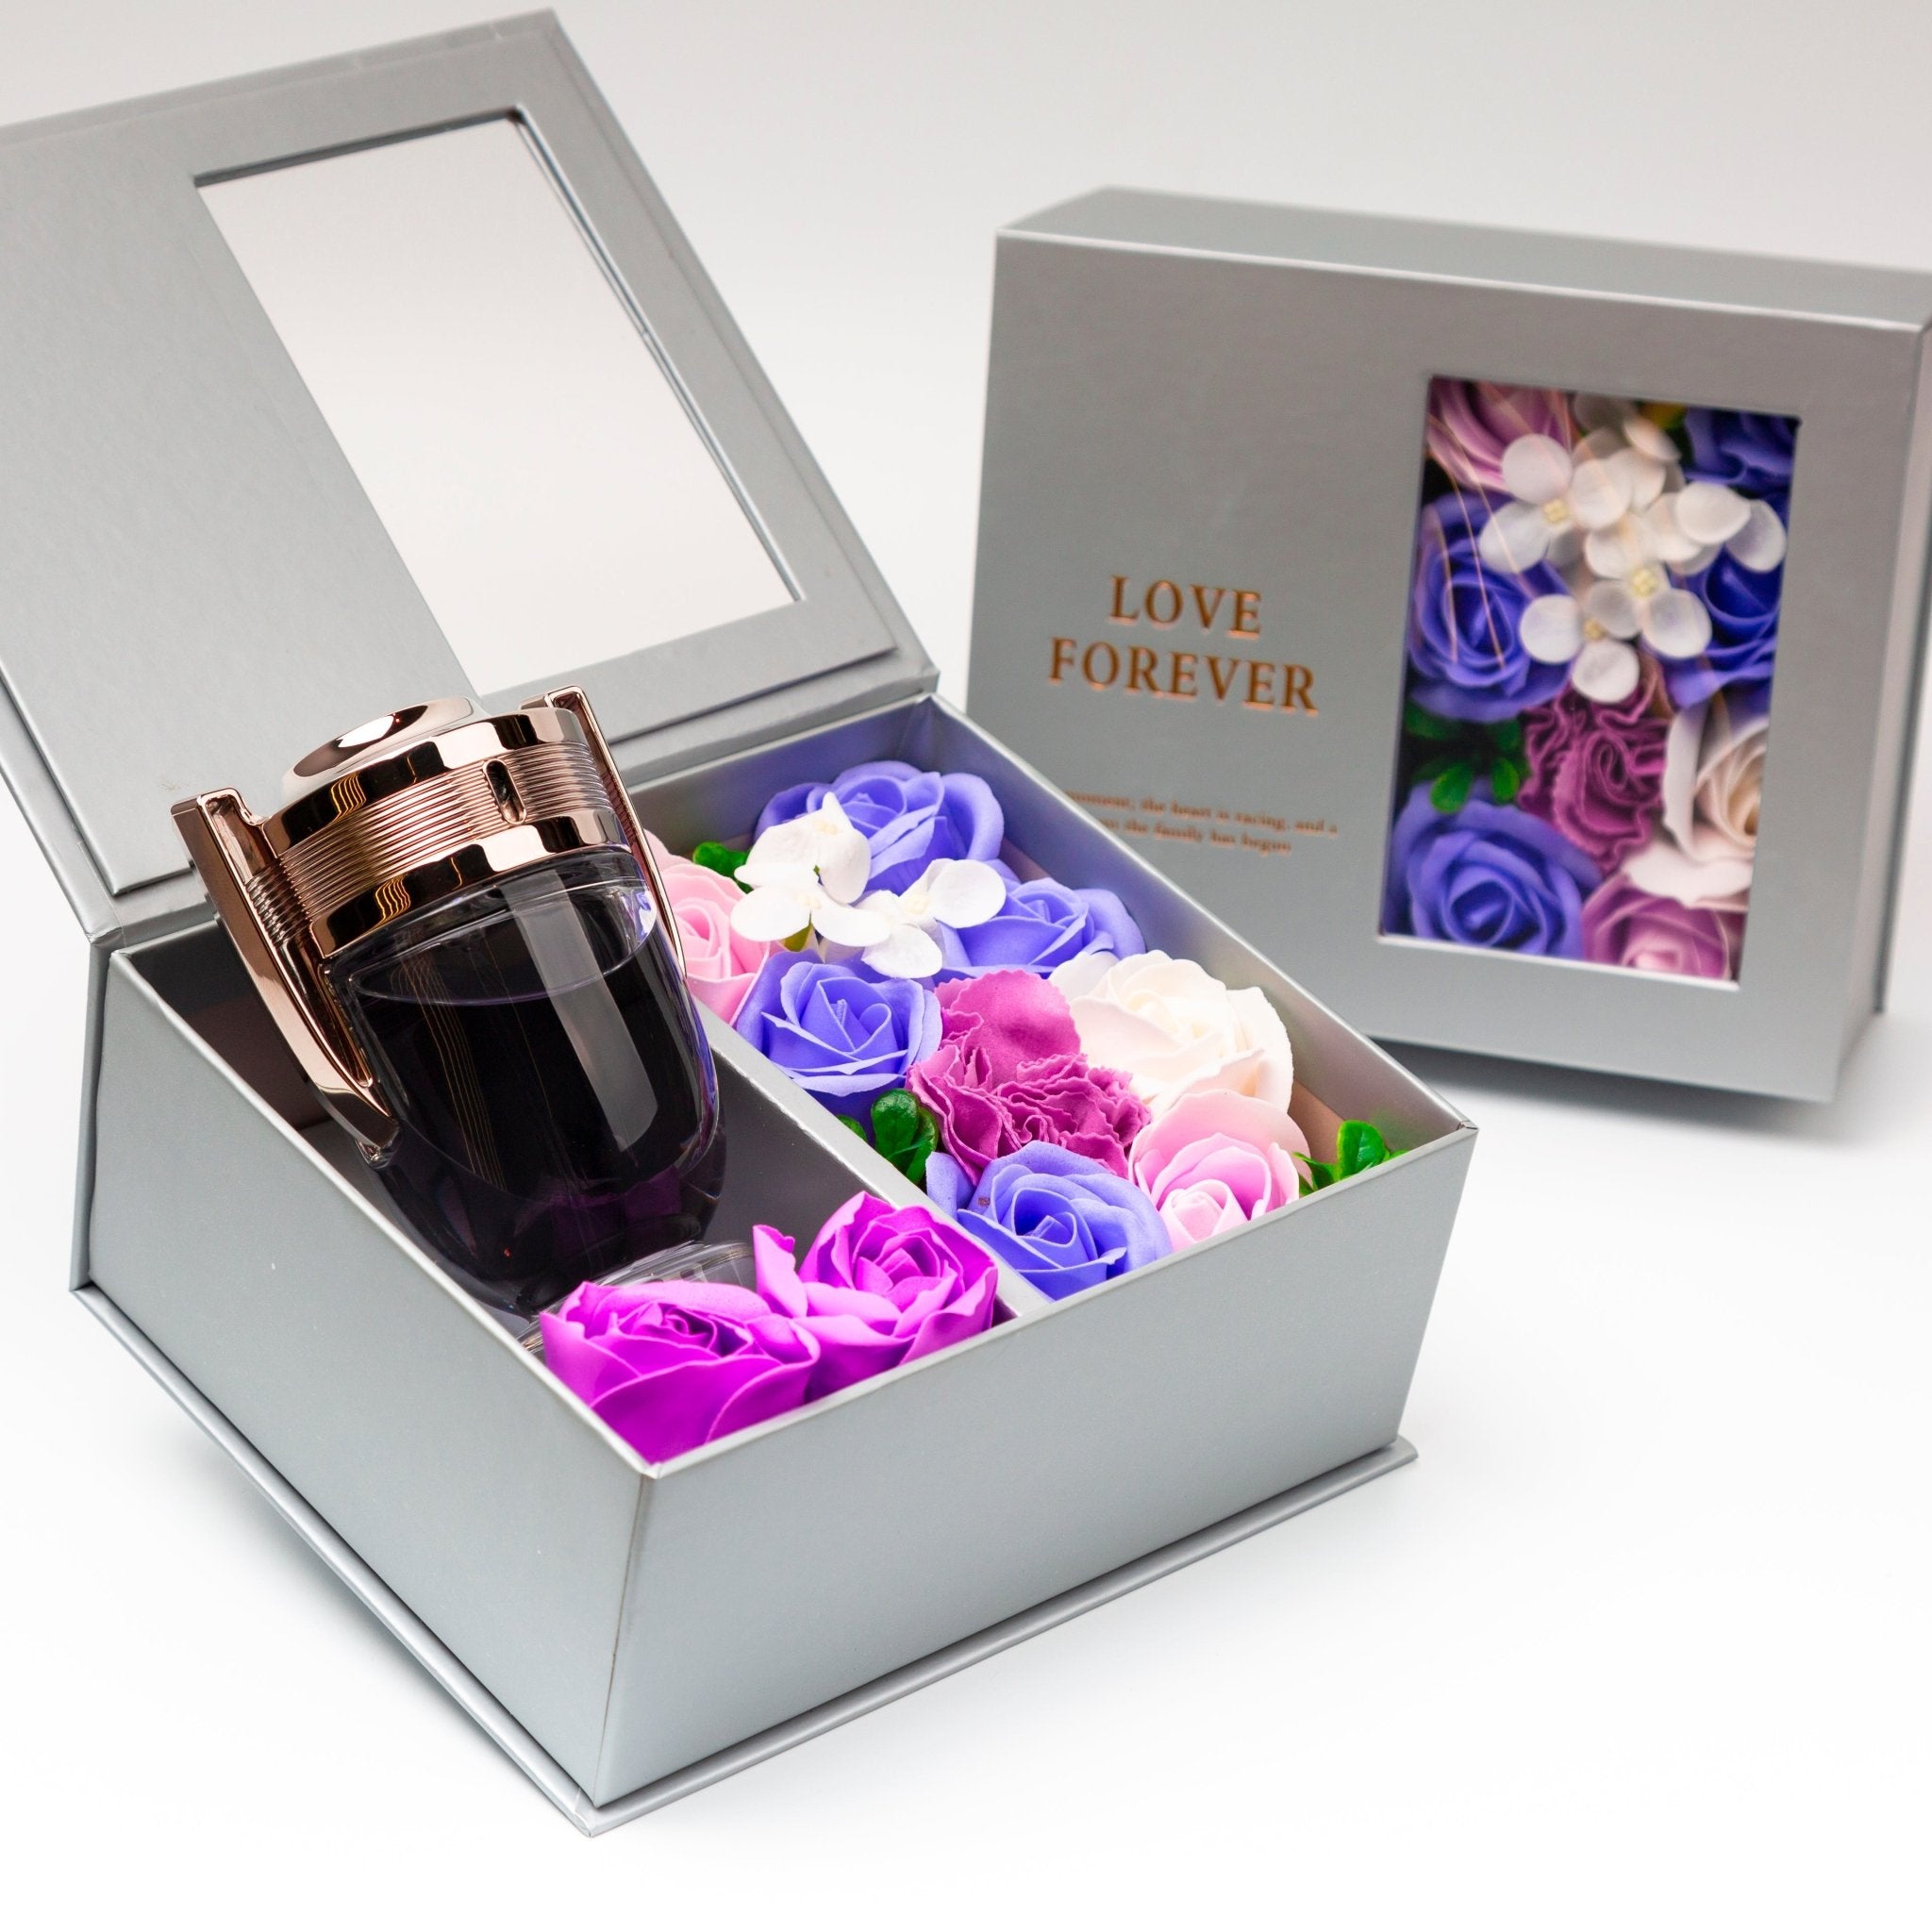 Flower Box - Perfume Gift For Men 6 - #shoFlower Box - Perfume Gift For Men 6p_name#Flower Box - Perfume Gift For Men 6Gift Boxes & TinsTakreemTakreem.joMenPerfumeFlower Box - Perfume Gift For Men 6 - Takreem.jo